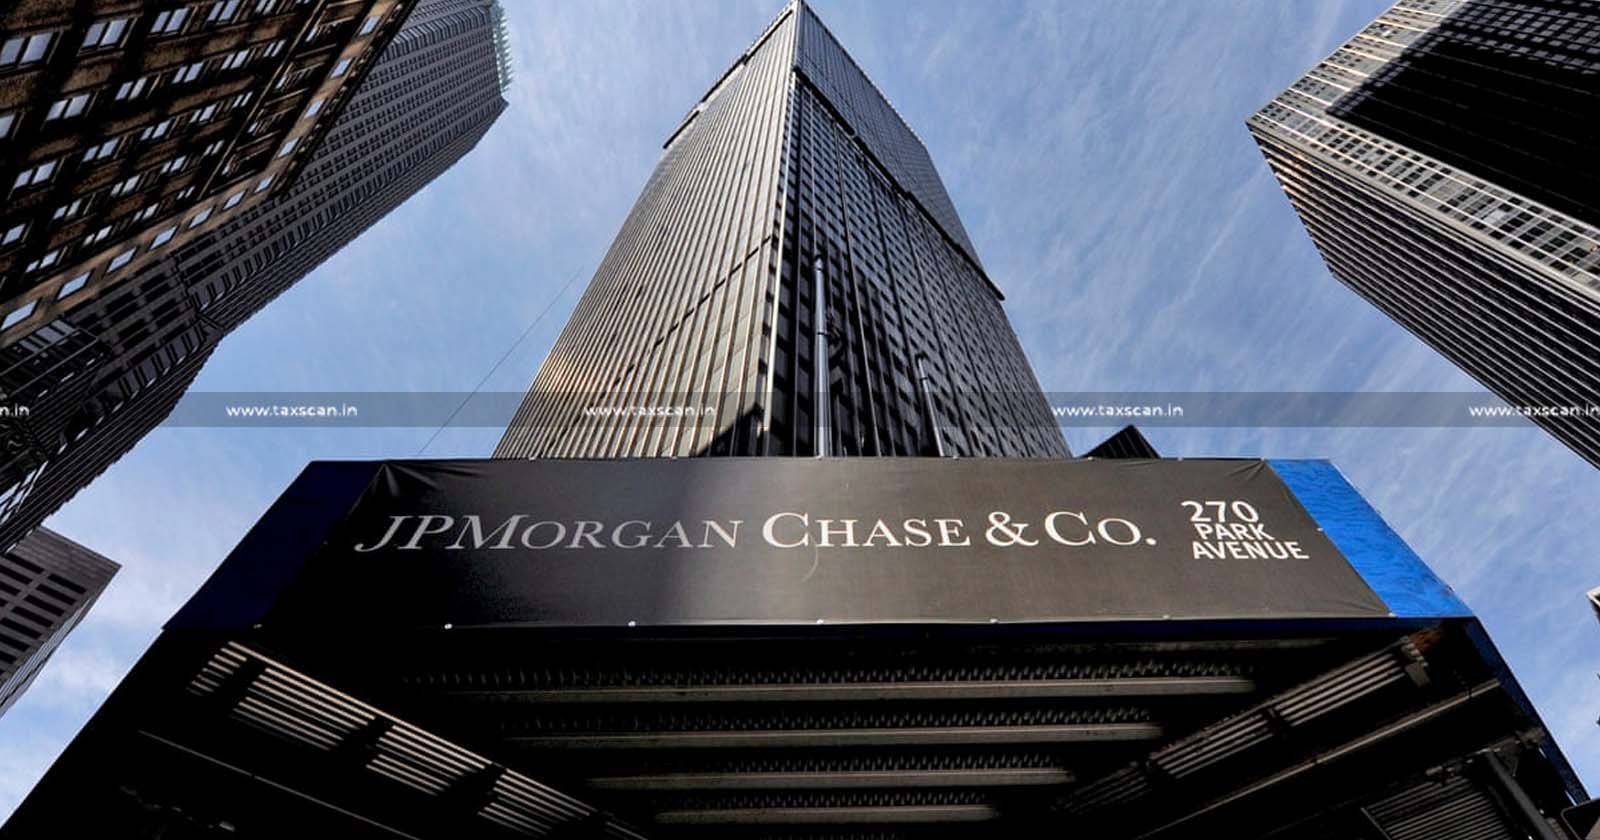 CA Vacancy in JPMorgan Chase & Co - Vacancy in JPMorgan Chase & Co - CA Vacancy - JPMorgan Chase & Co - CA - Vacancy - Taxscan